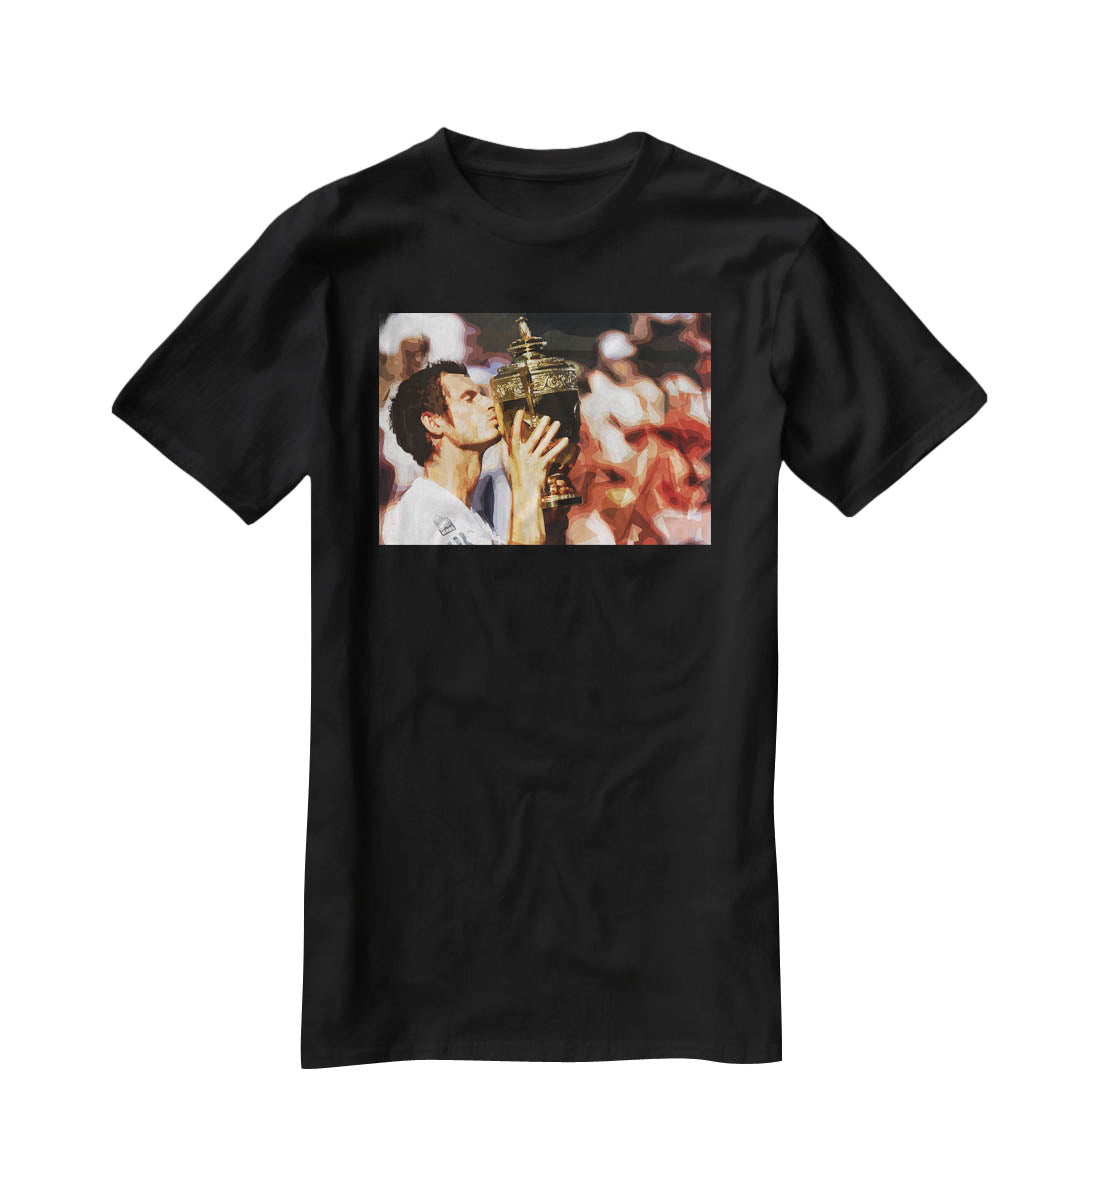 Andy Murray Wimbledon Winner T-Shirt